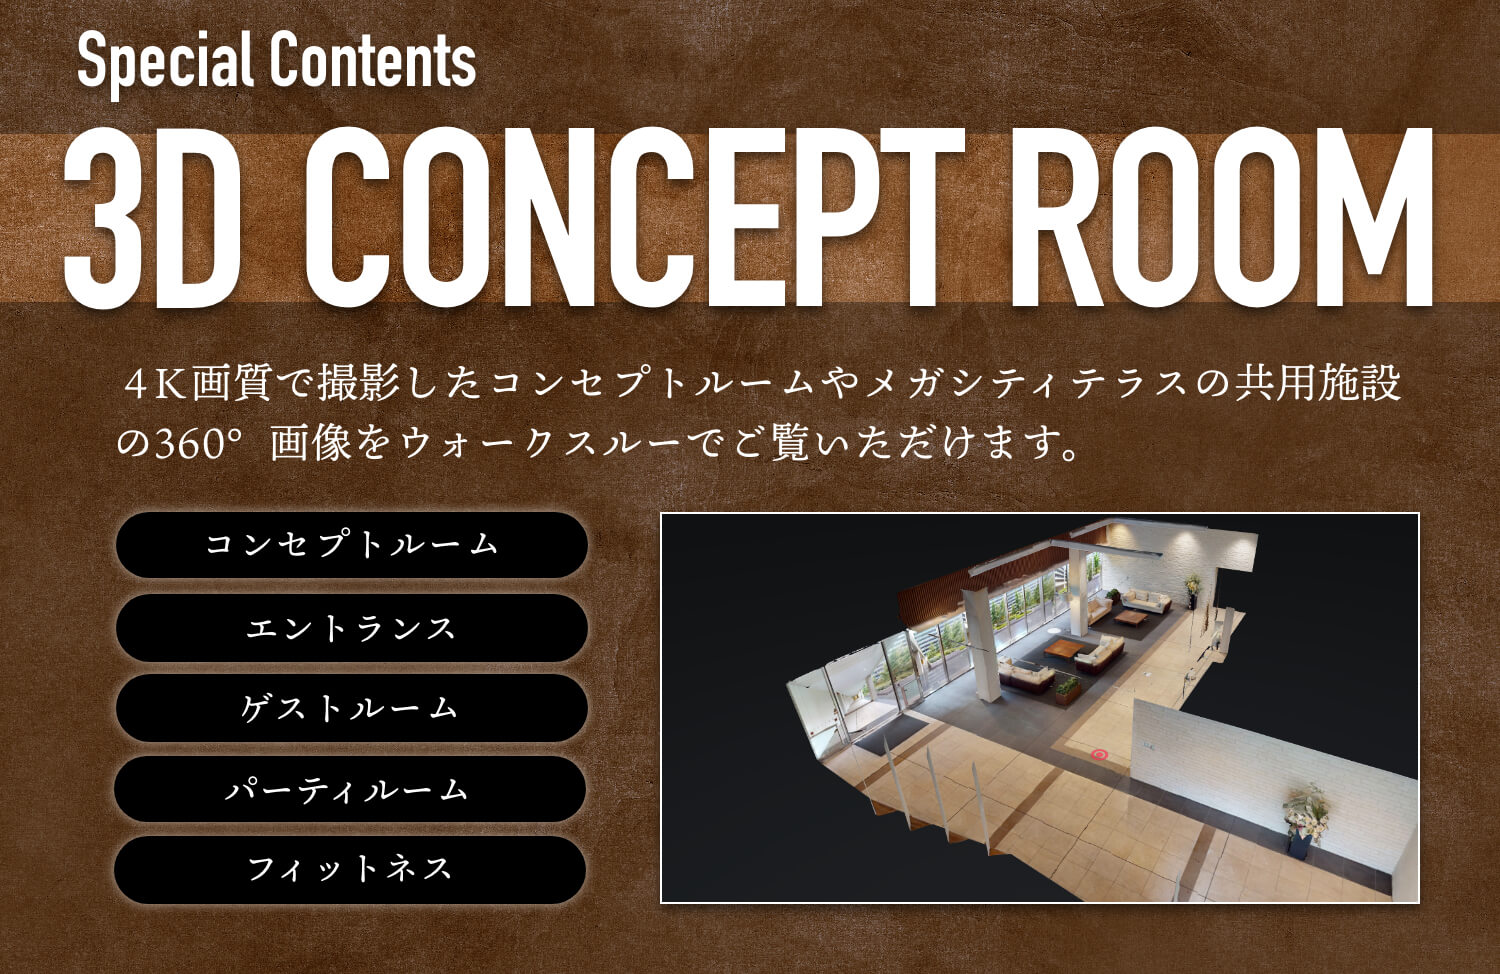 Special Contents 3D CONCEPT ROOM